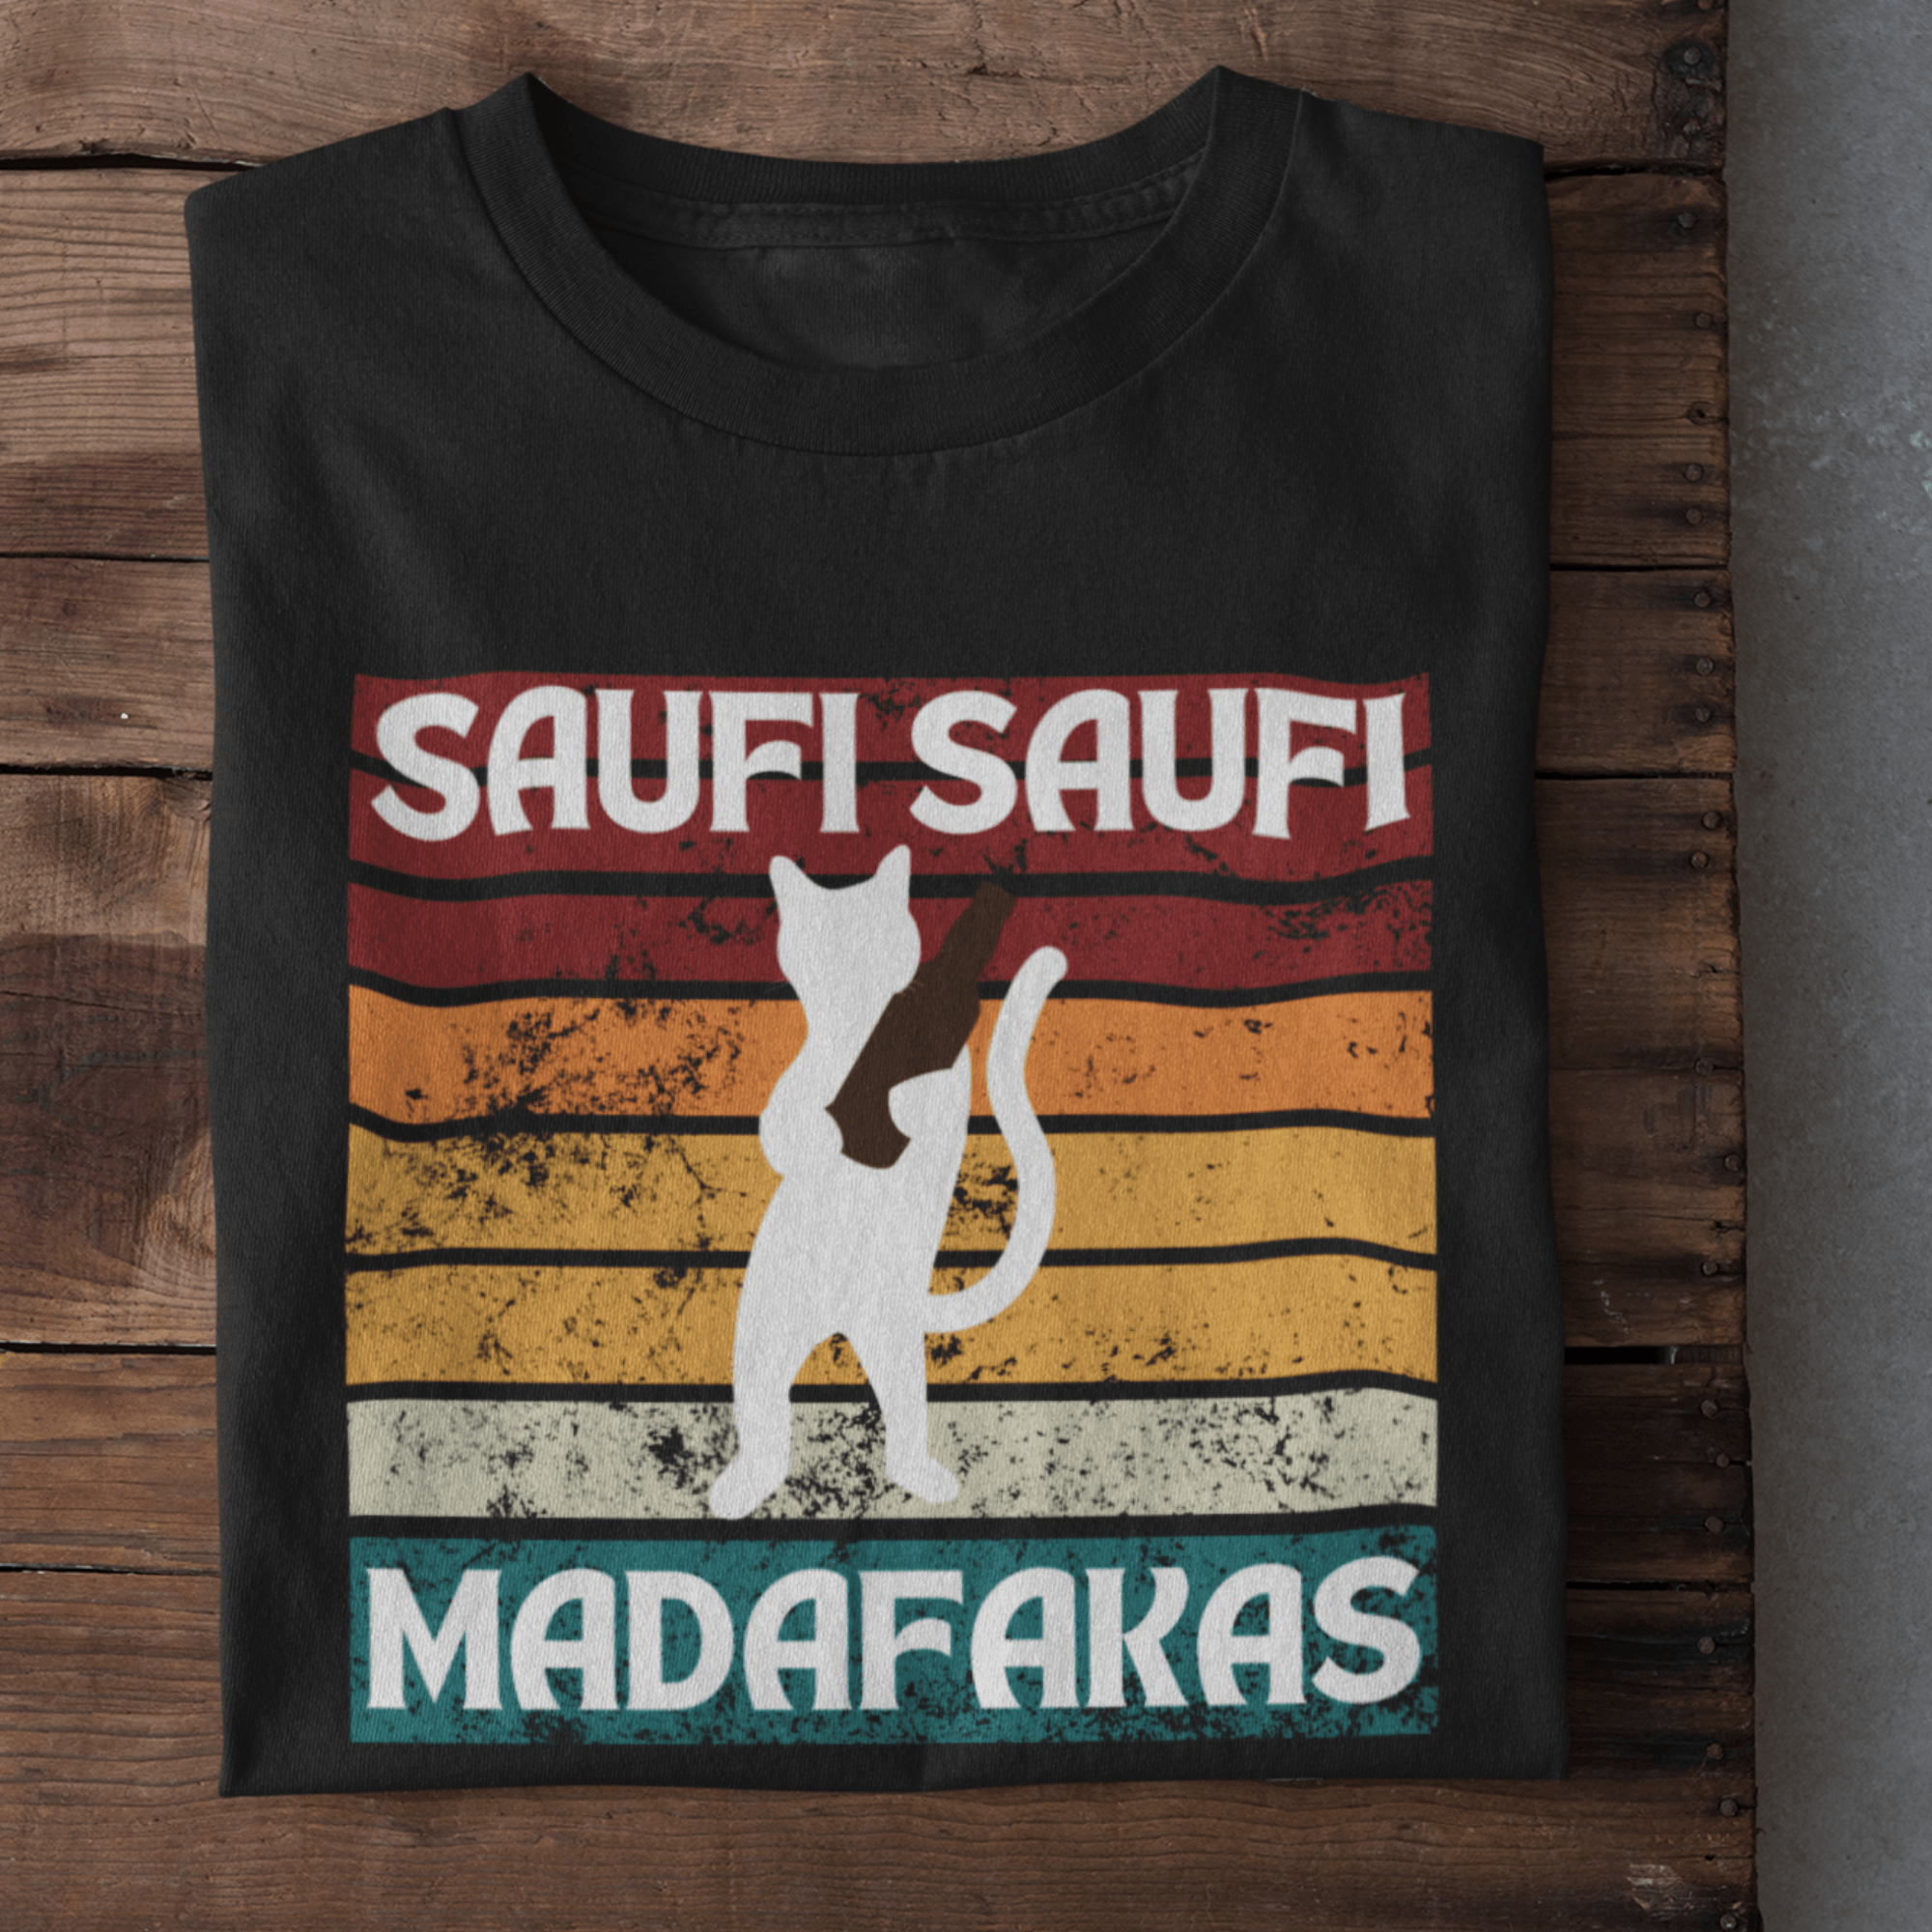 SAUFI SAUFI MADAFAKAS - Herren Shirt - einschenken24.de